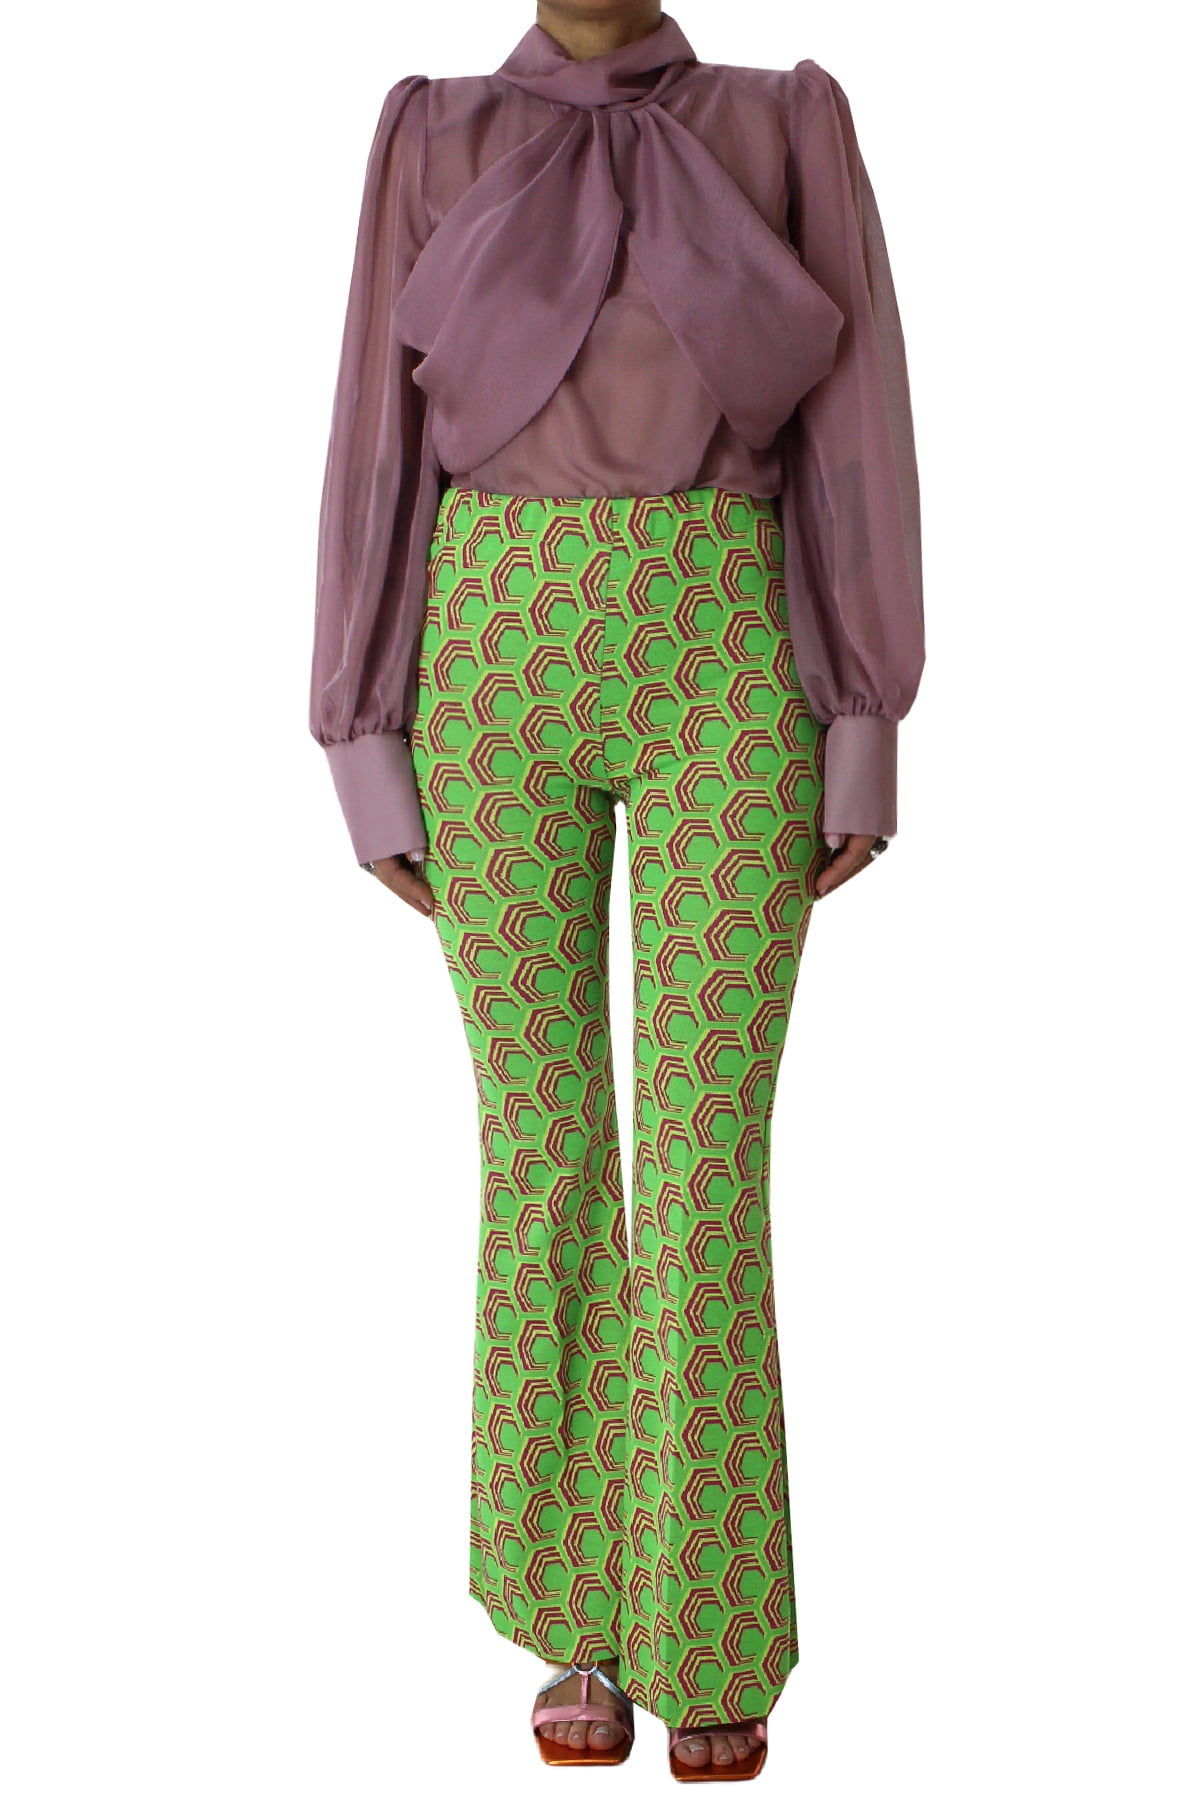 Pantalone donna vita alta a zampa con elastico in vita tessuto jersey con stampa geometrica